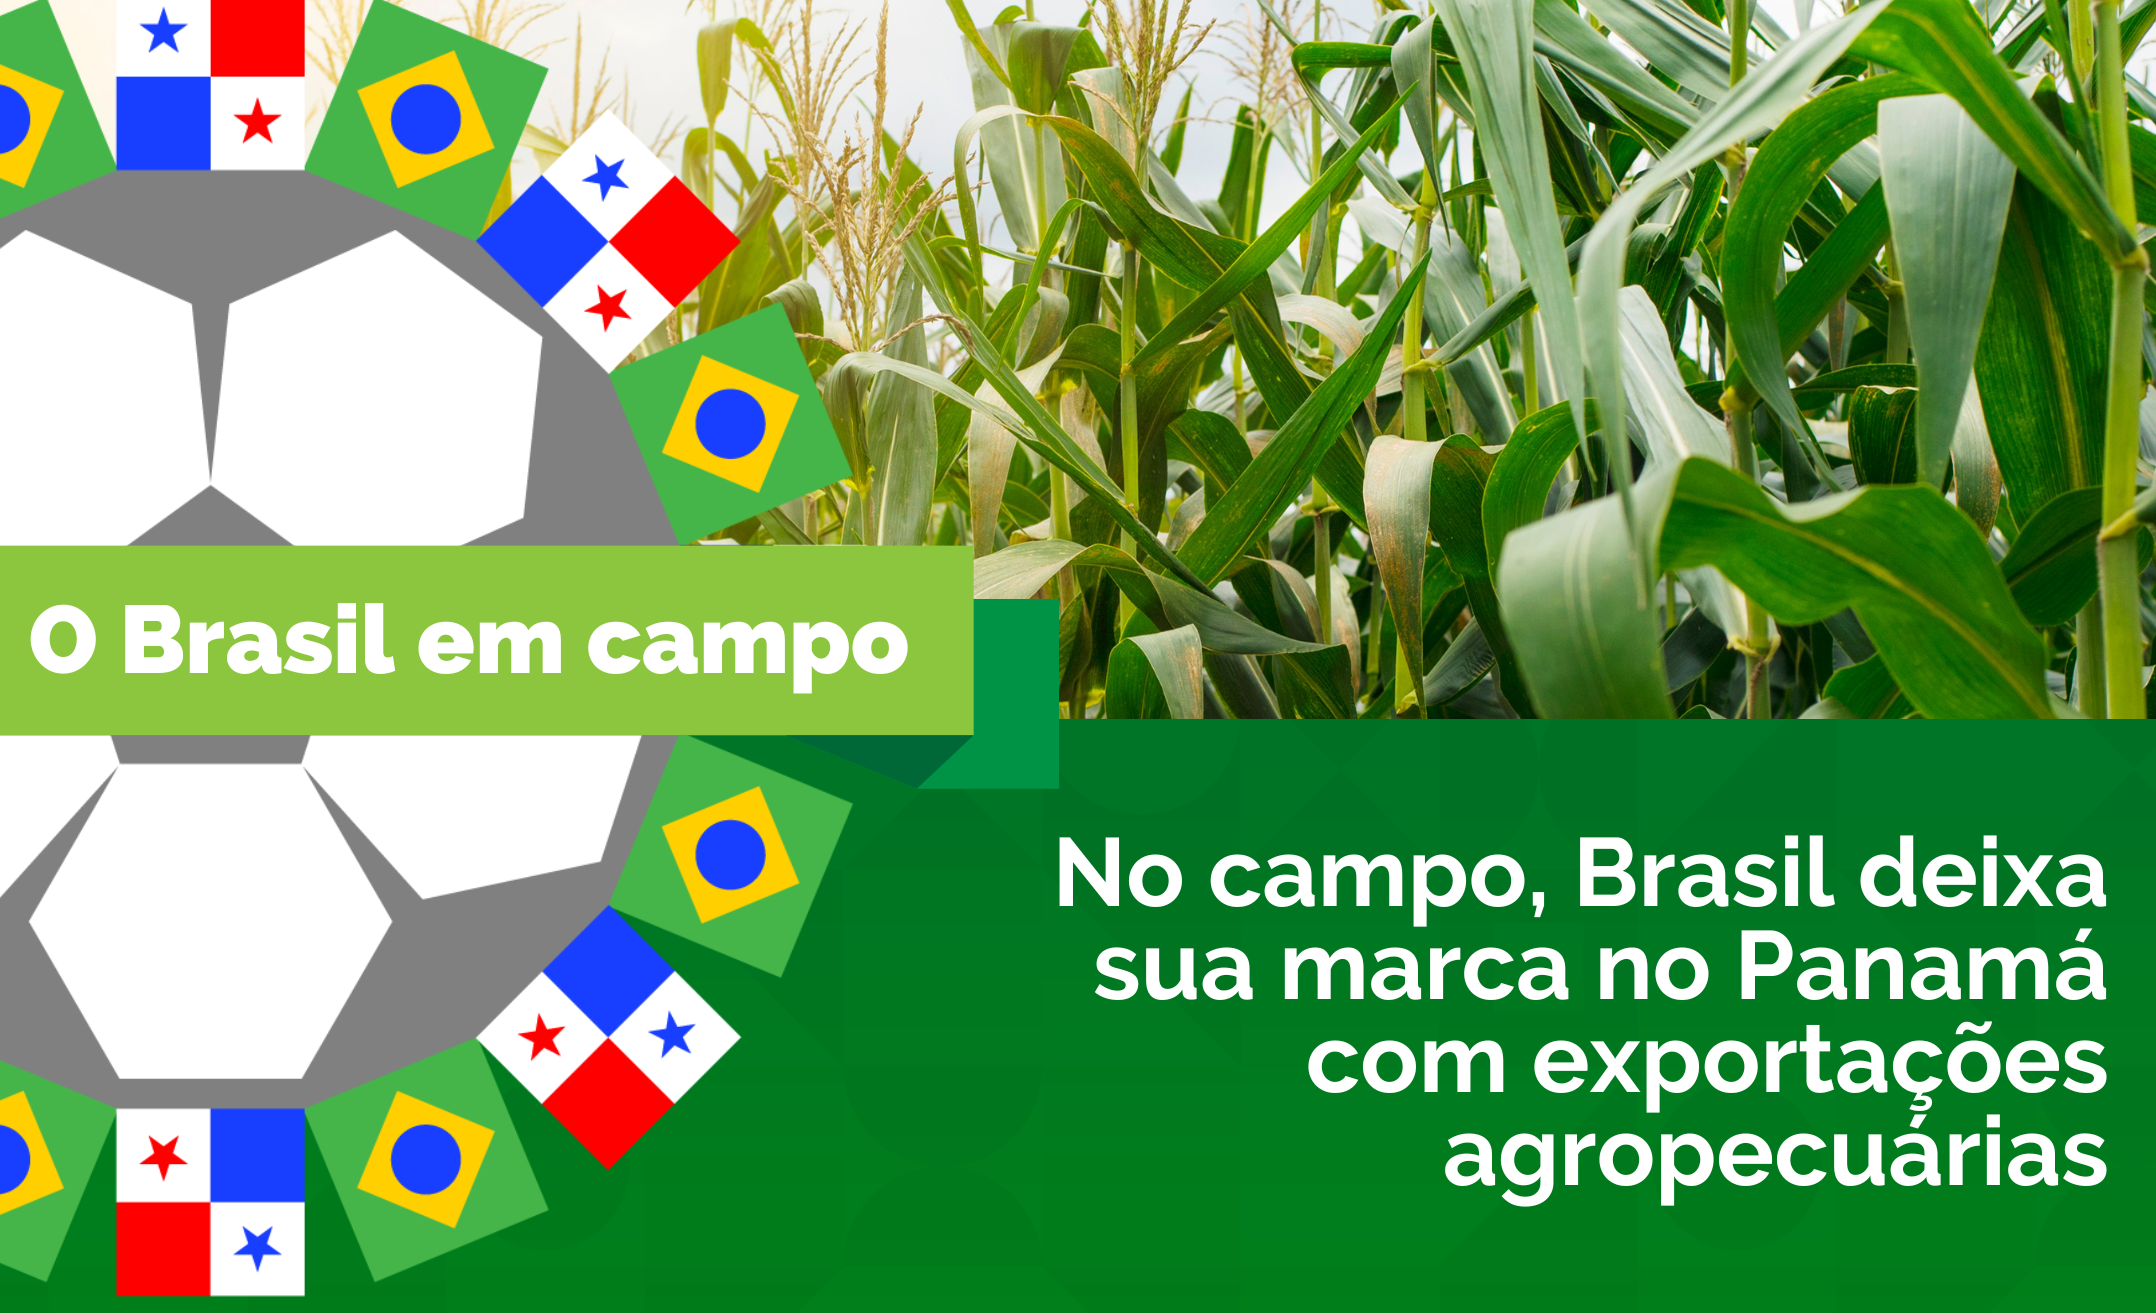 https://www.gov.br/agricultura/pt-br/assuntos/noticias/no-campo-brasil-deixa-sua-marca-no-panama-com-exportacoes-agropecuarias/BrasilPanama.png